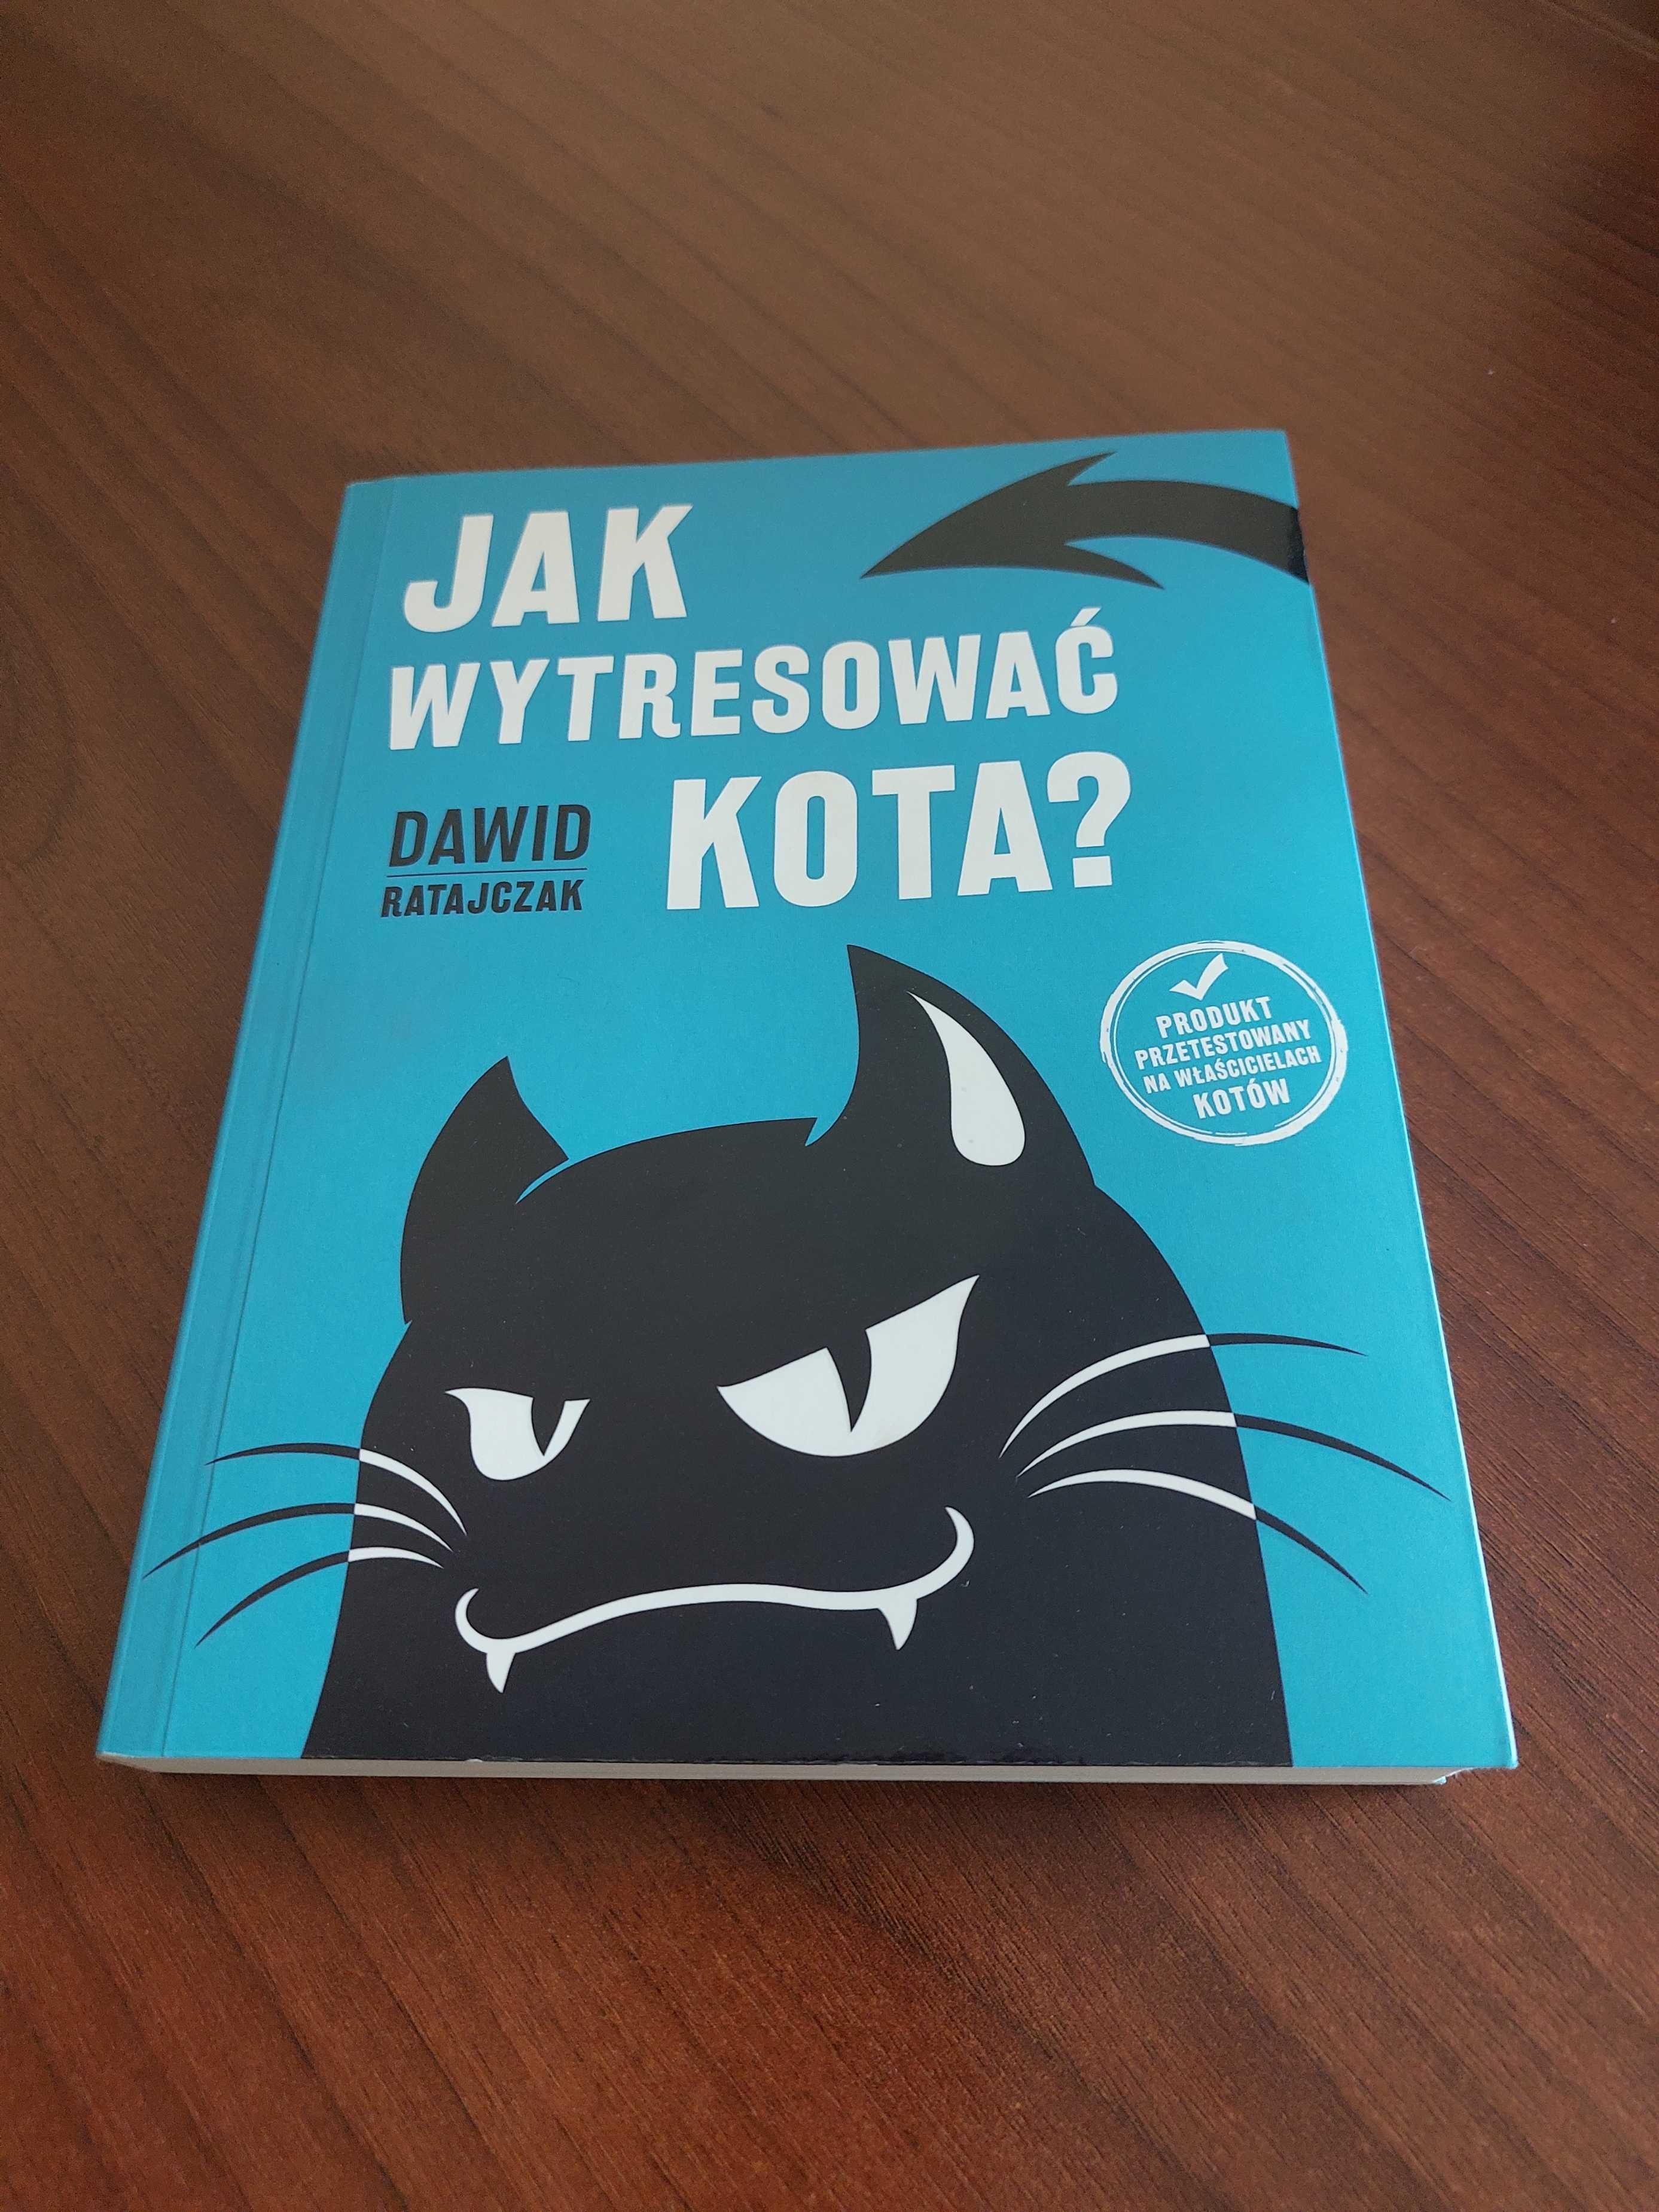 Dawid Ratajczyk "Jak wytresować kota?"